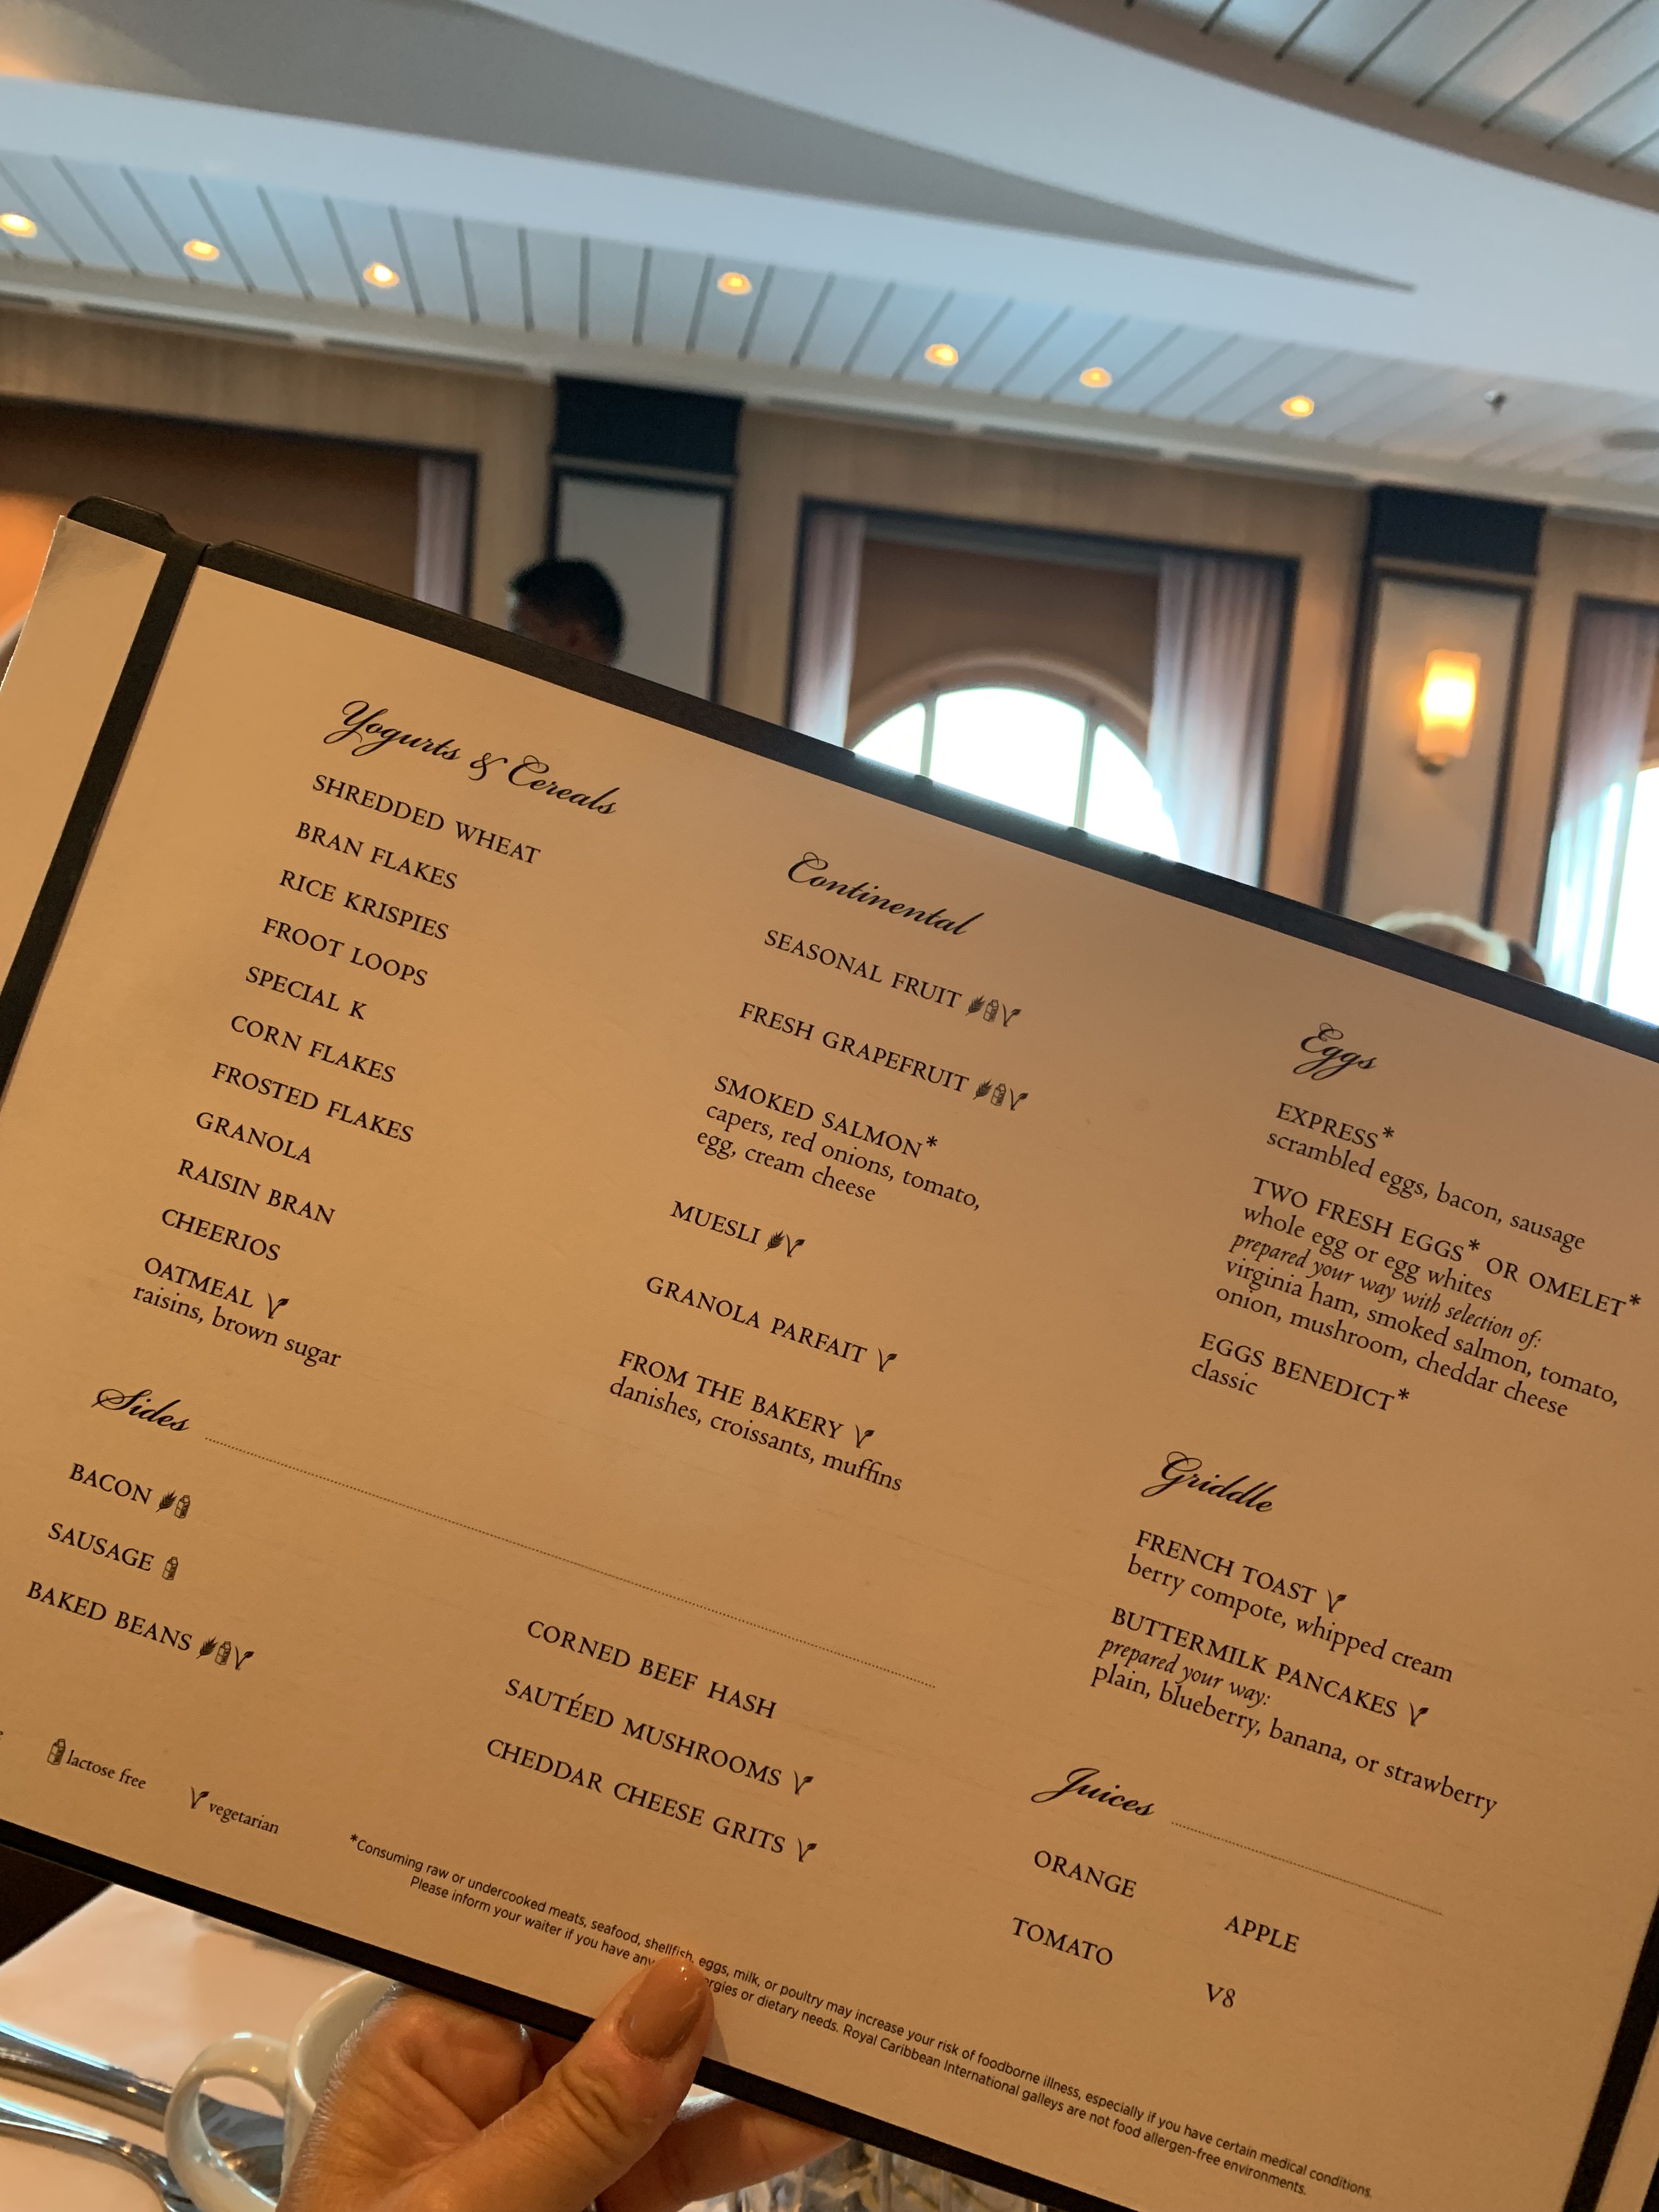 royal caribbean cruise buffet menu